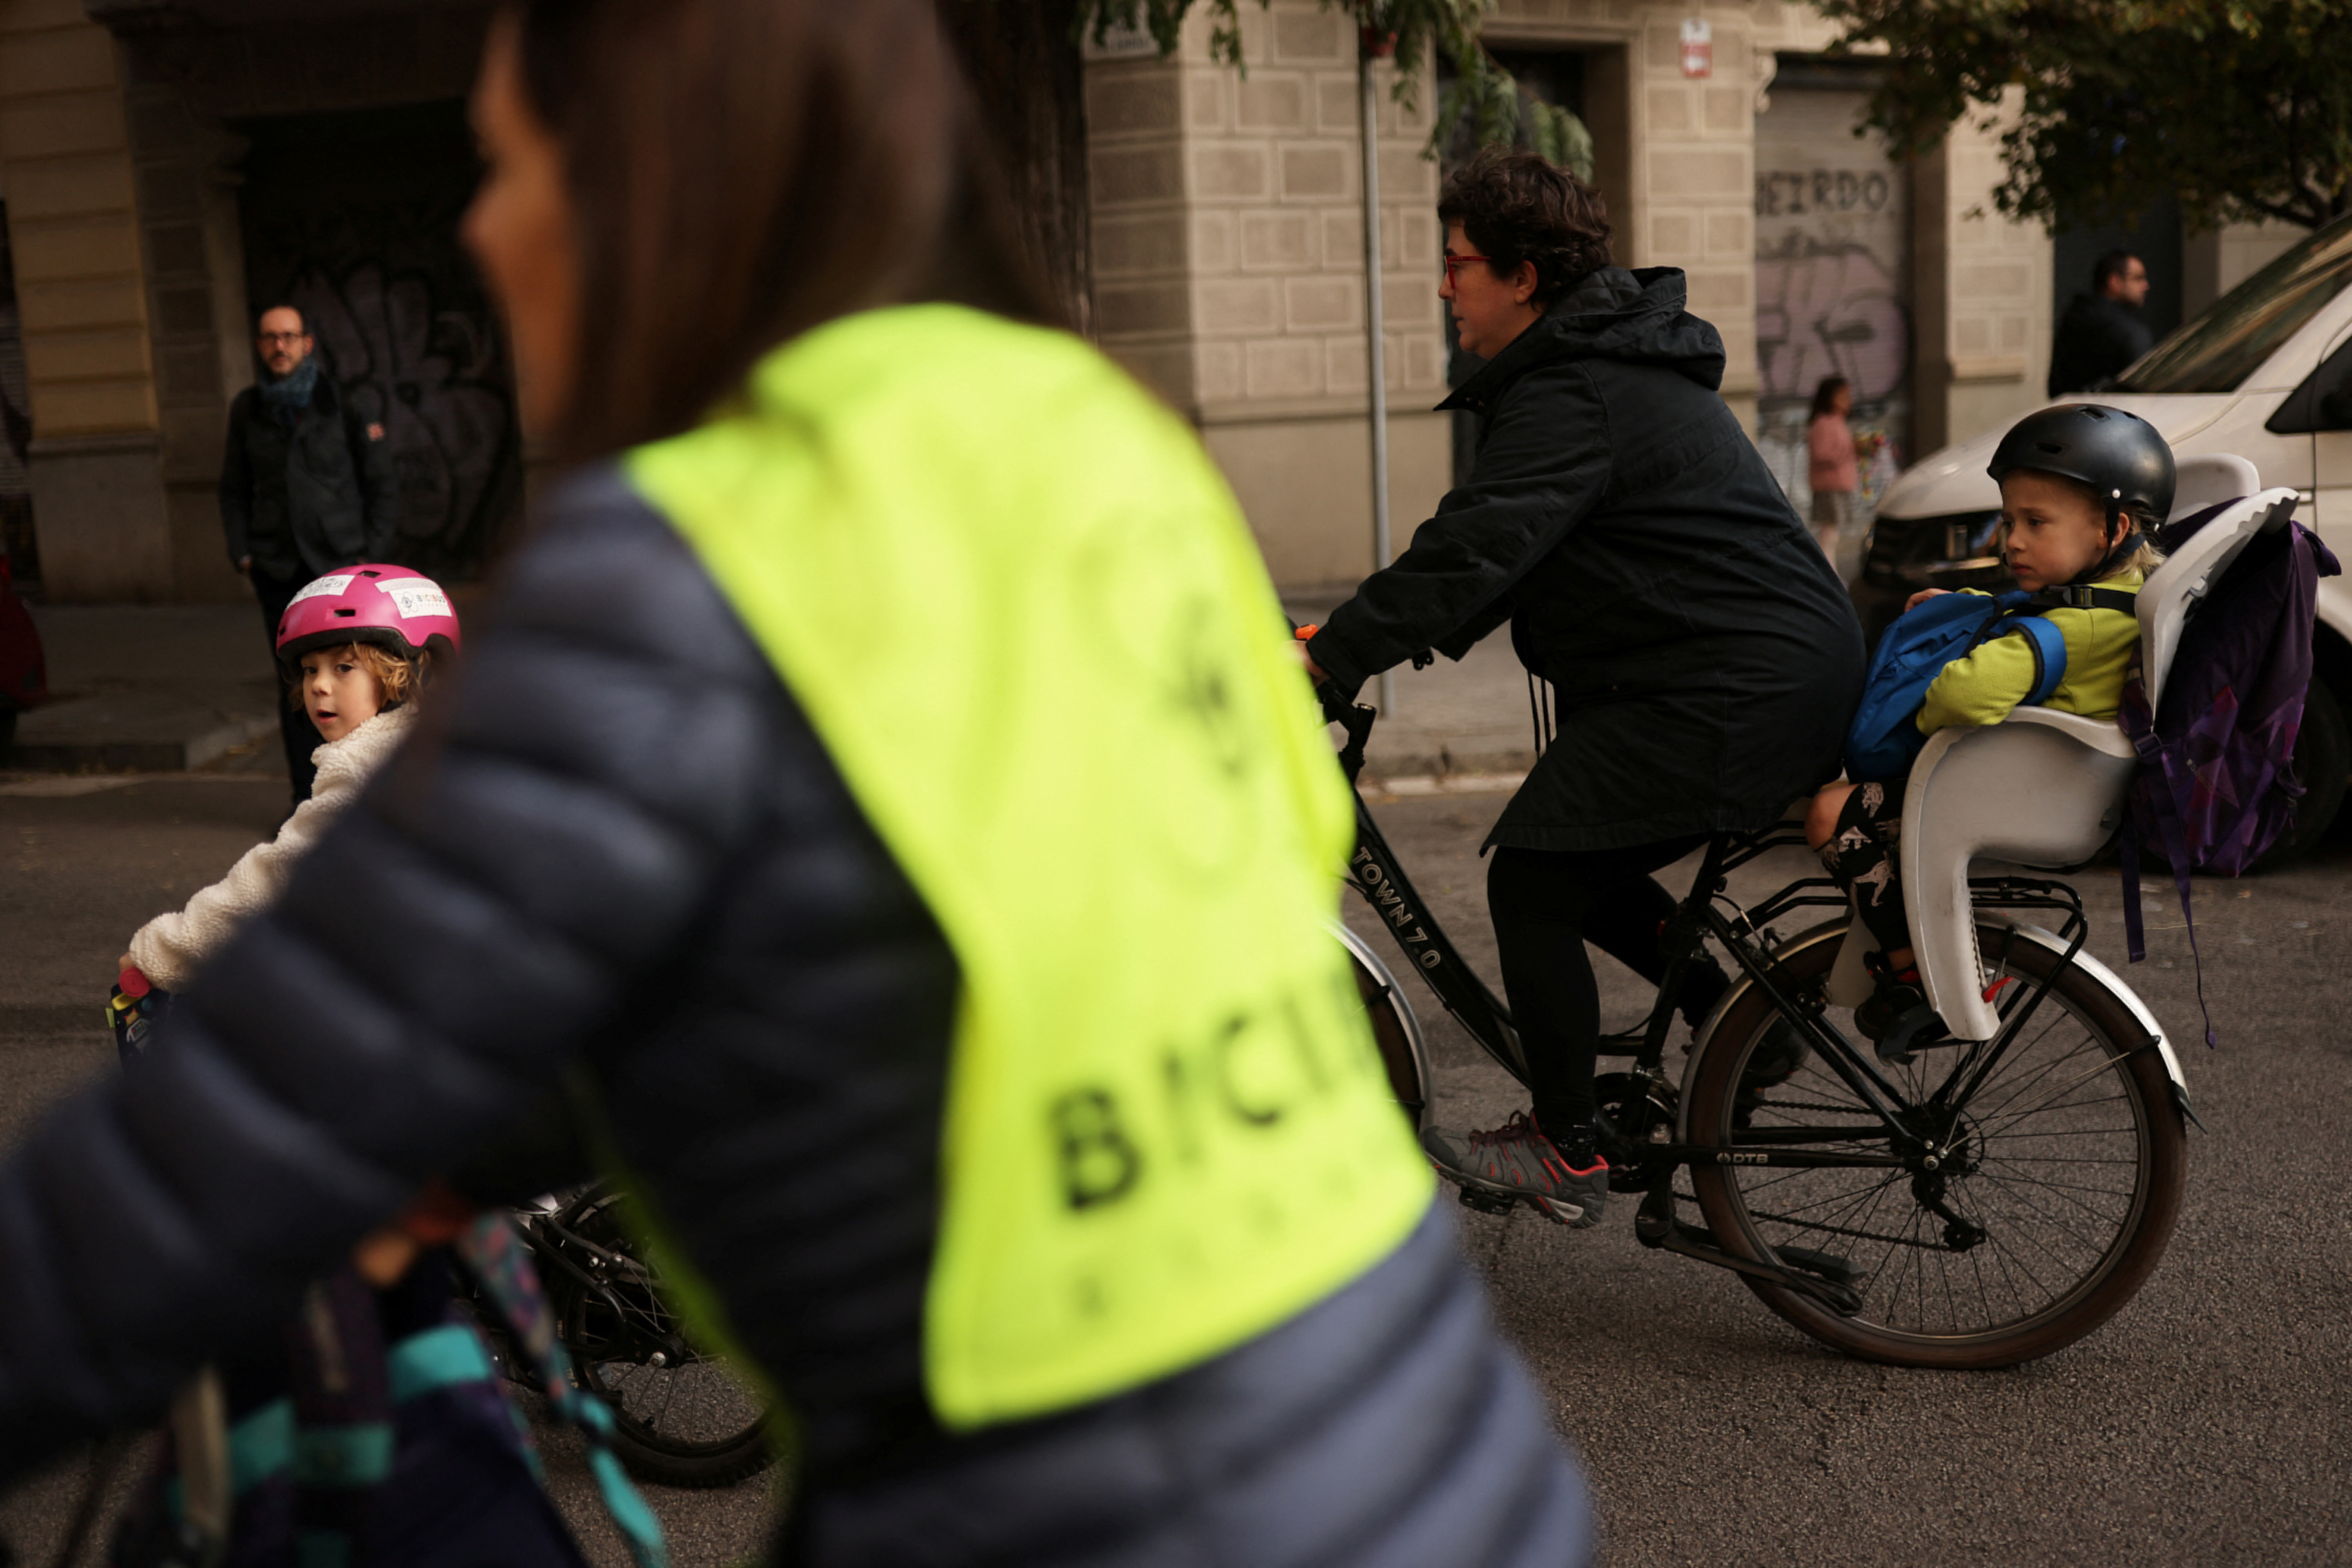 Barcelona's bike bus scheme for kids promotes green transport